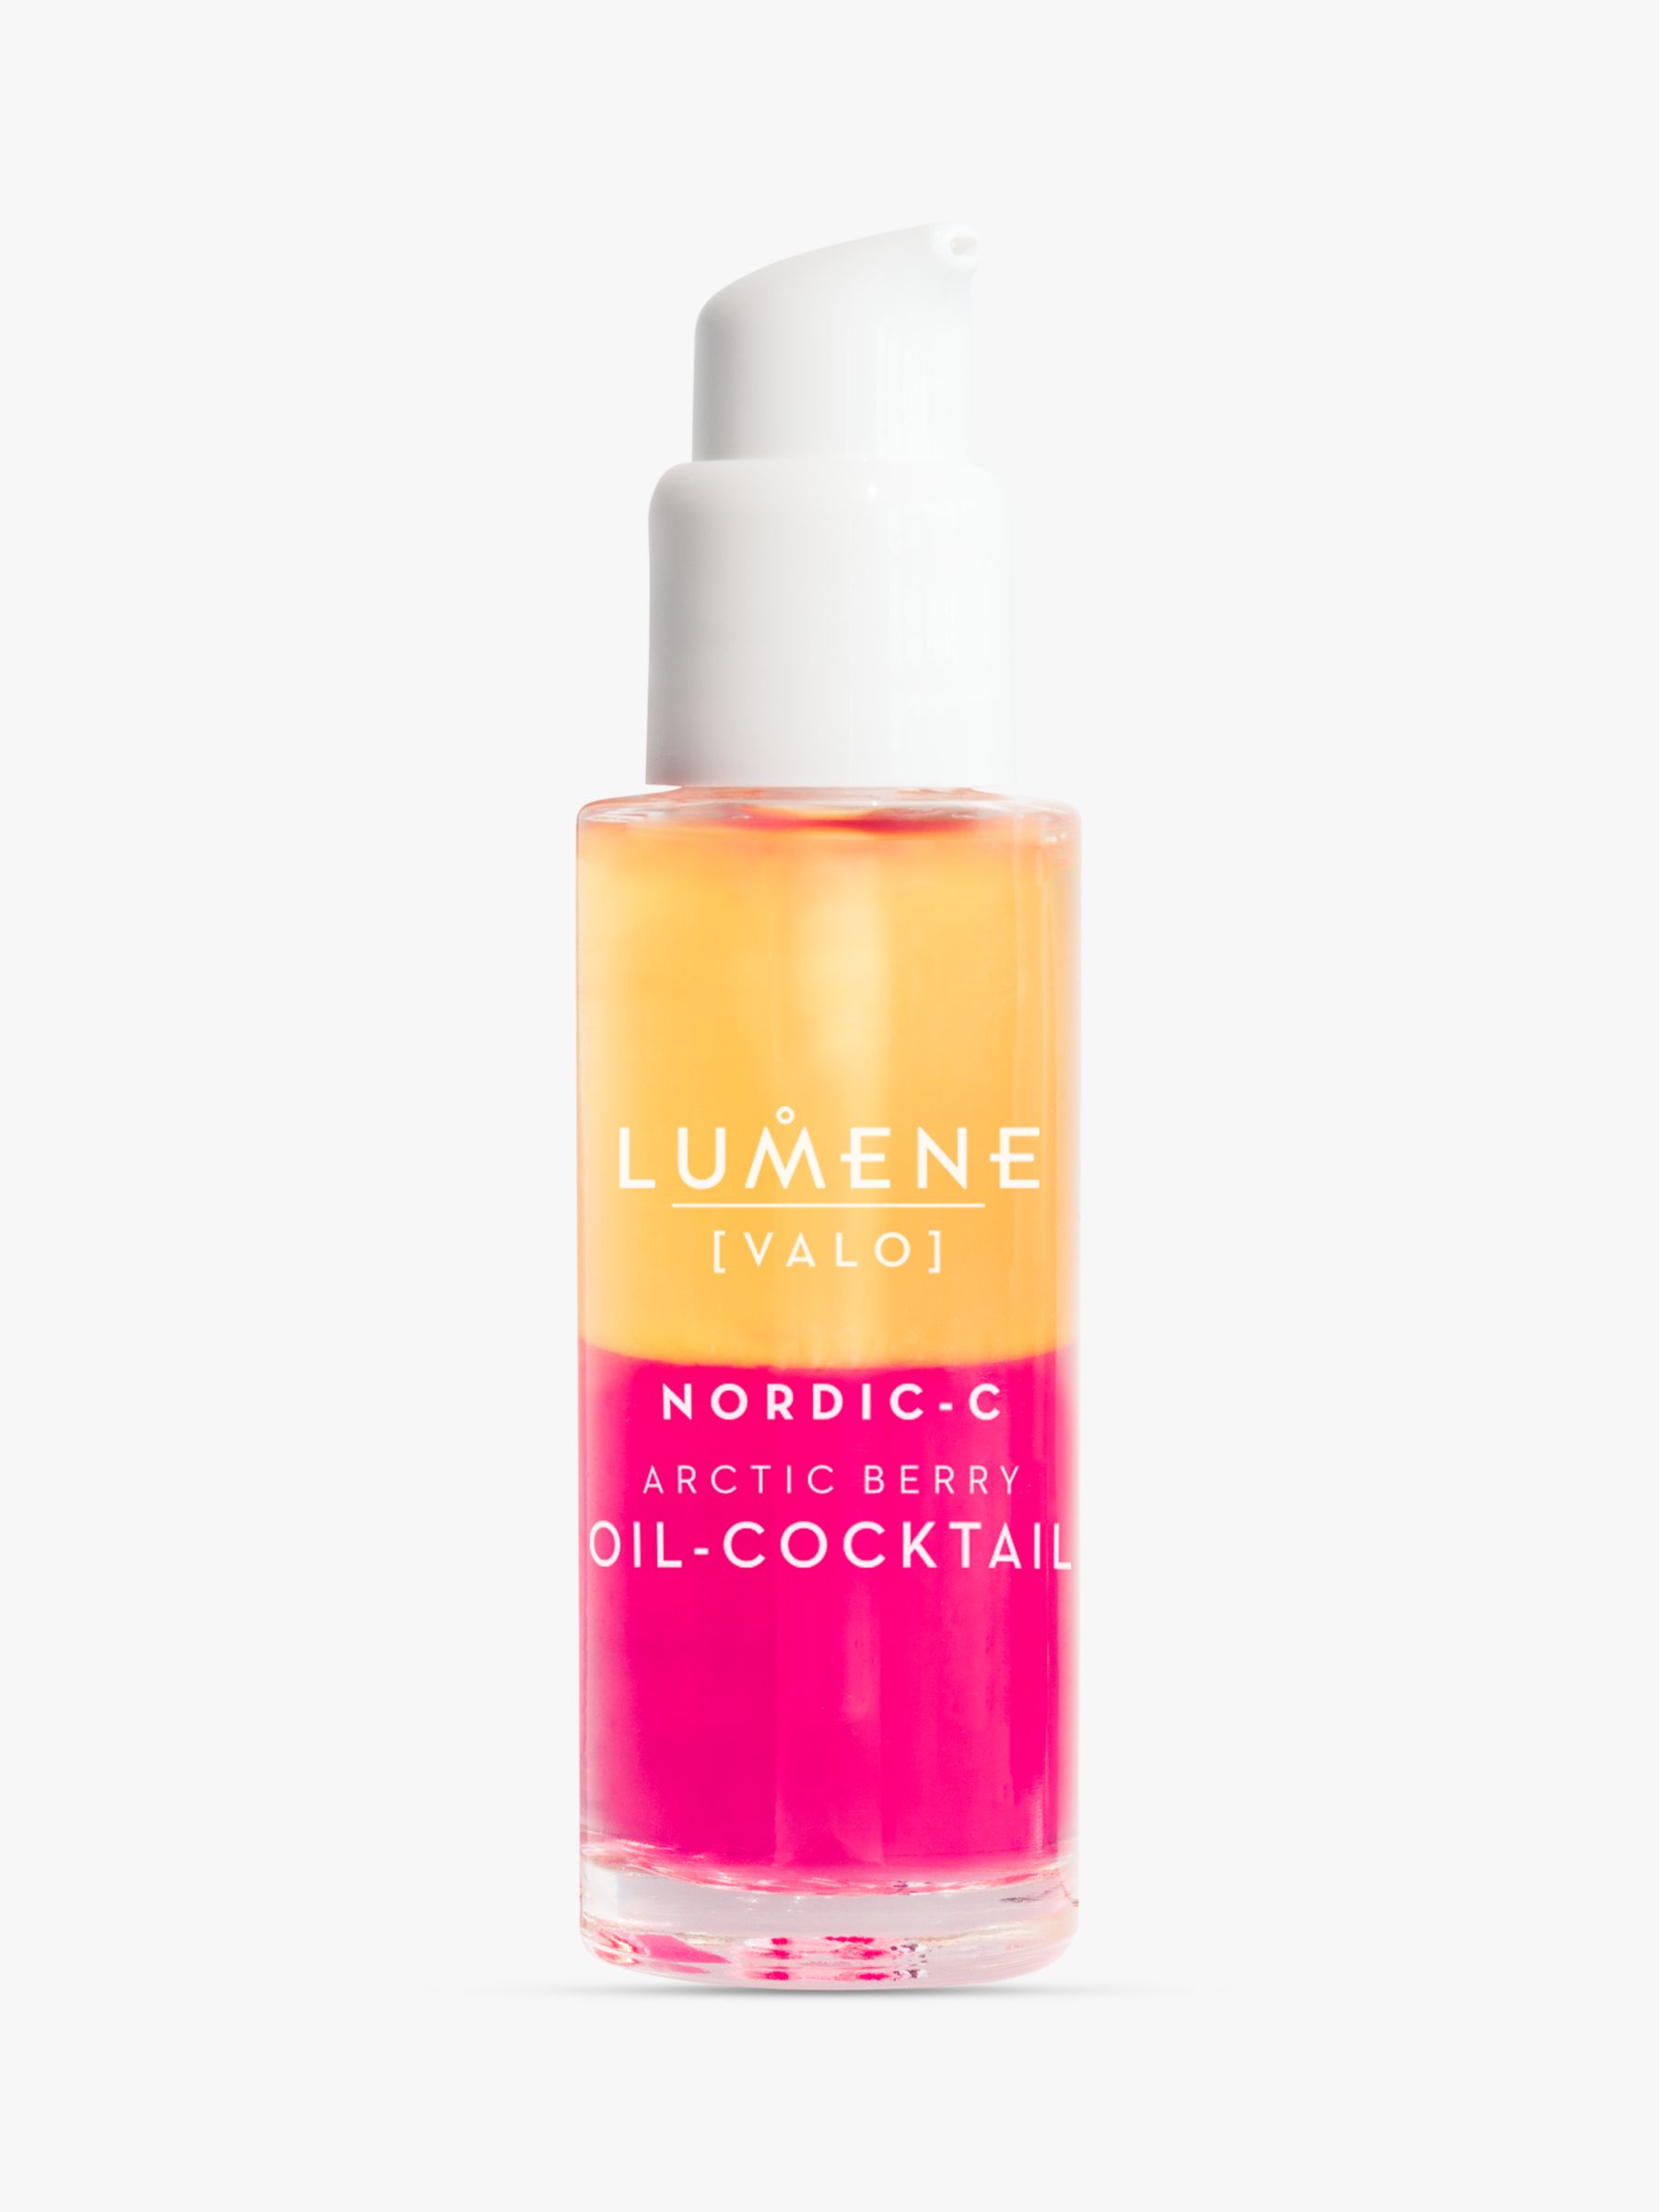 Lumene Nordic-C Arctic Berry Oil-Cocktail, 30ml 1